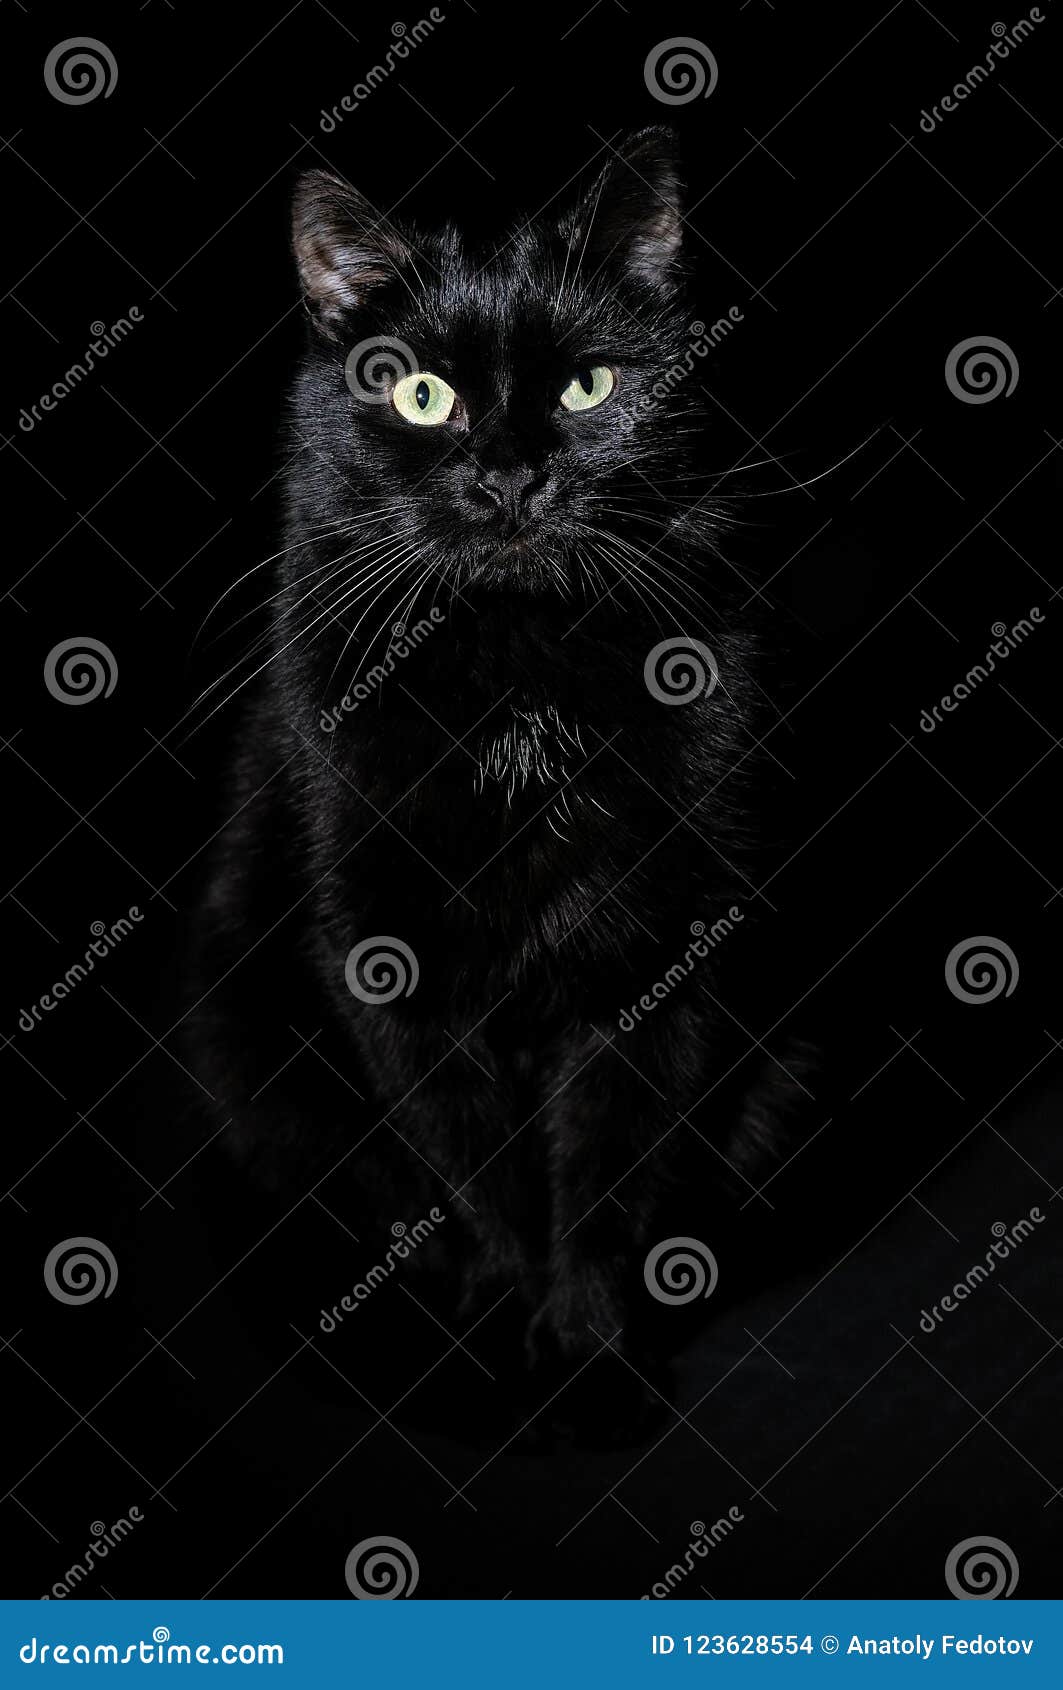 Mèo đen trên nền đen - Nếu bạn đang muốn trở thành một nhiếp ảnh gia chuyên nghiệp hoặc chỉ đơn giản là yêu thích chụp ảnh mèo, hãy cùng chiêm ngưỡng một bức ảnh đáng yêu với một chú mèo đen trên nền đen. Chắc chắn bạn sẽ bị cuốn hút bởi độ dễ thương và bí ẩn của chú mèo này.